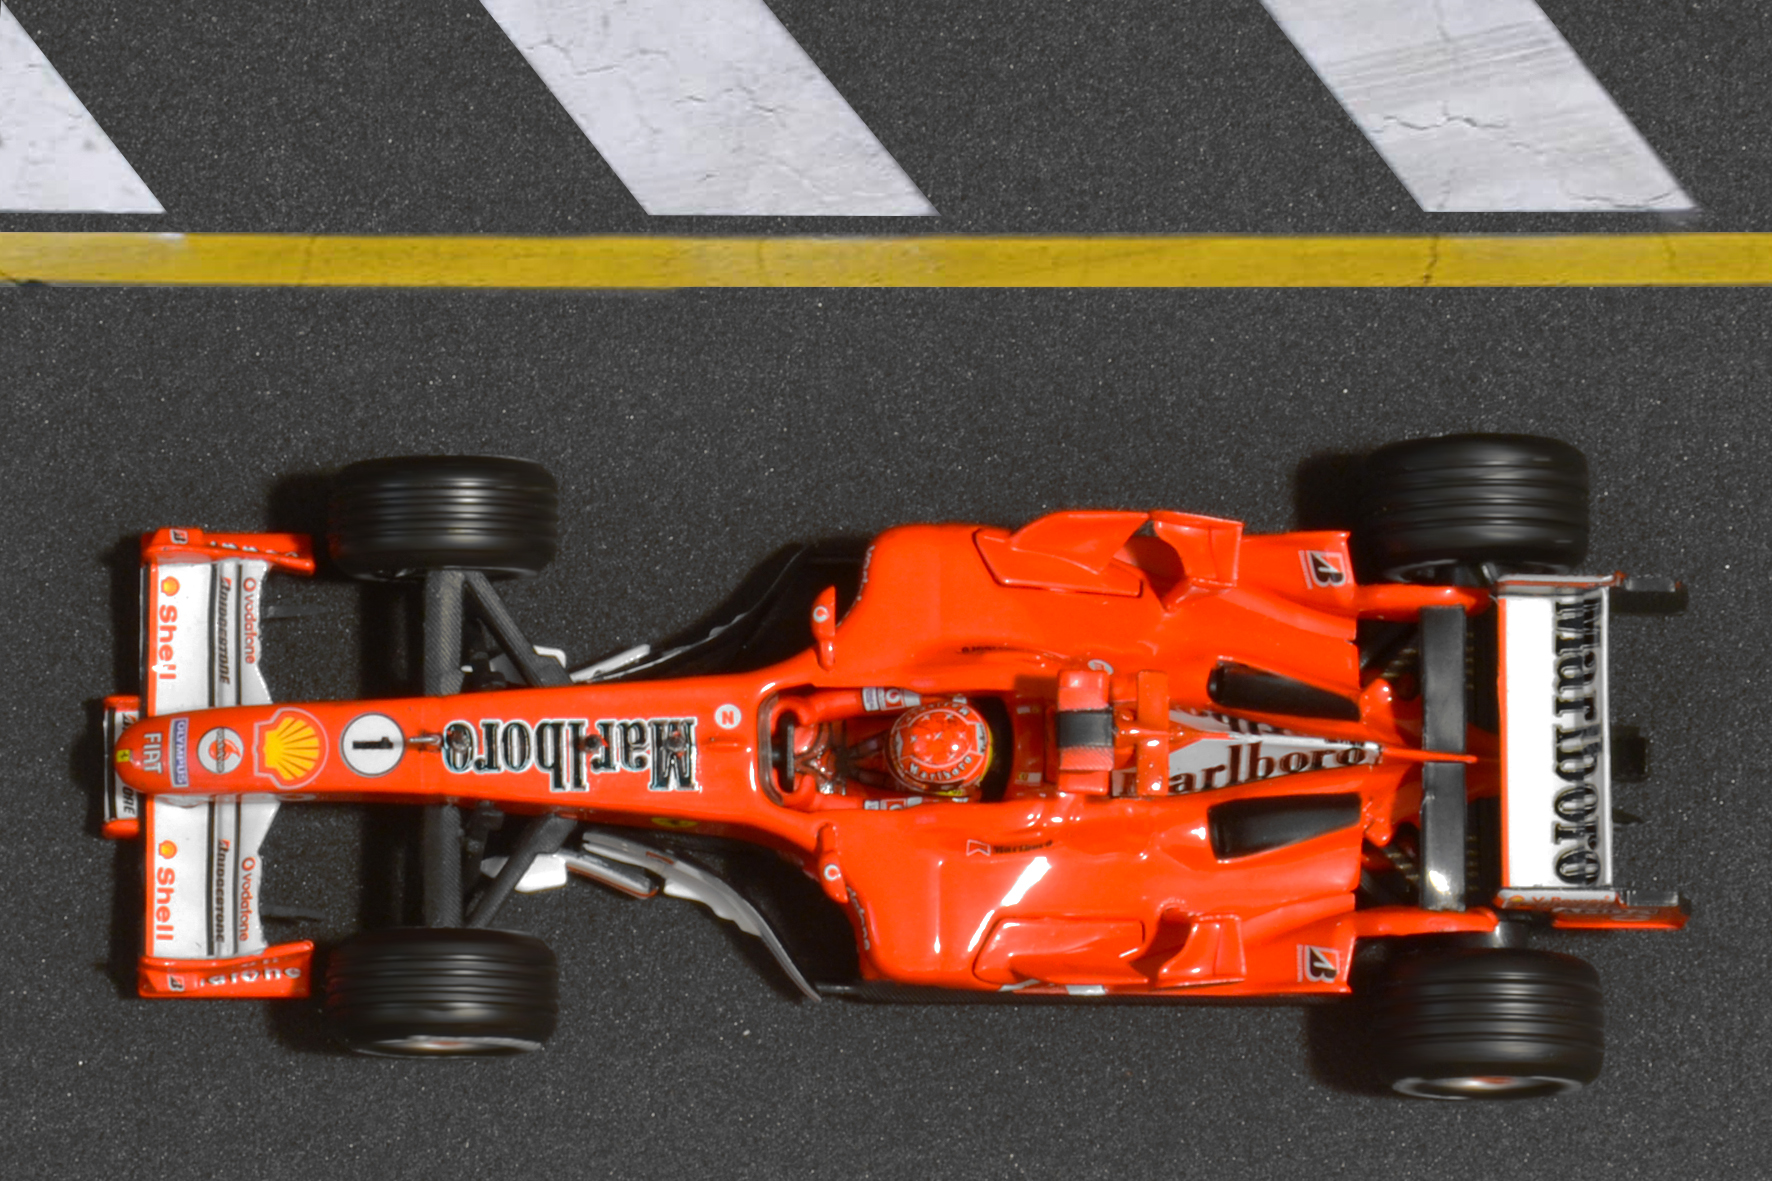 Év:2005<br />Modell: F2005<br />Pilóta: Michael Schumacher<br />Gyártó: Hot Wheels